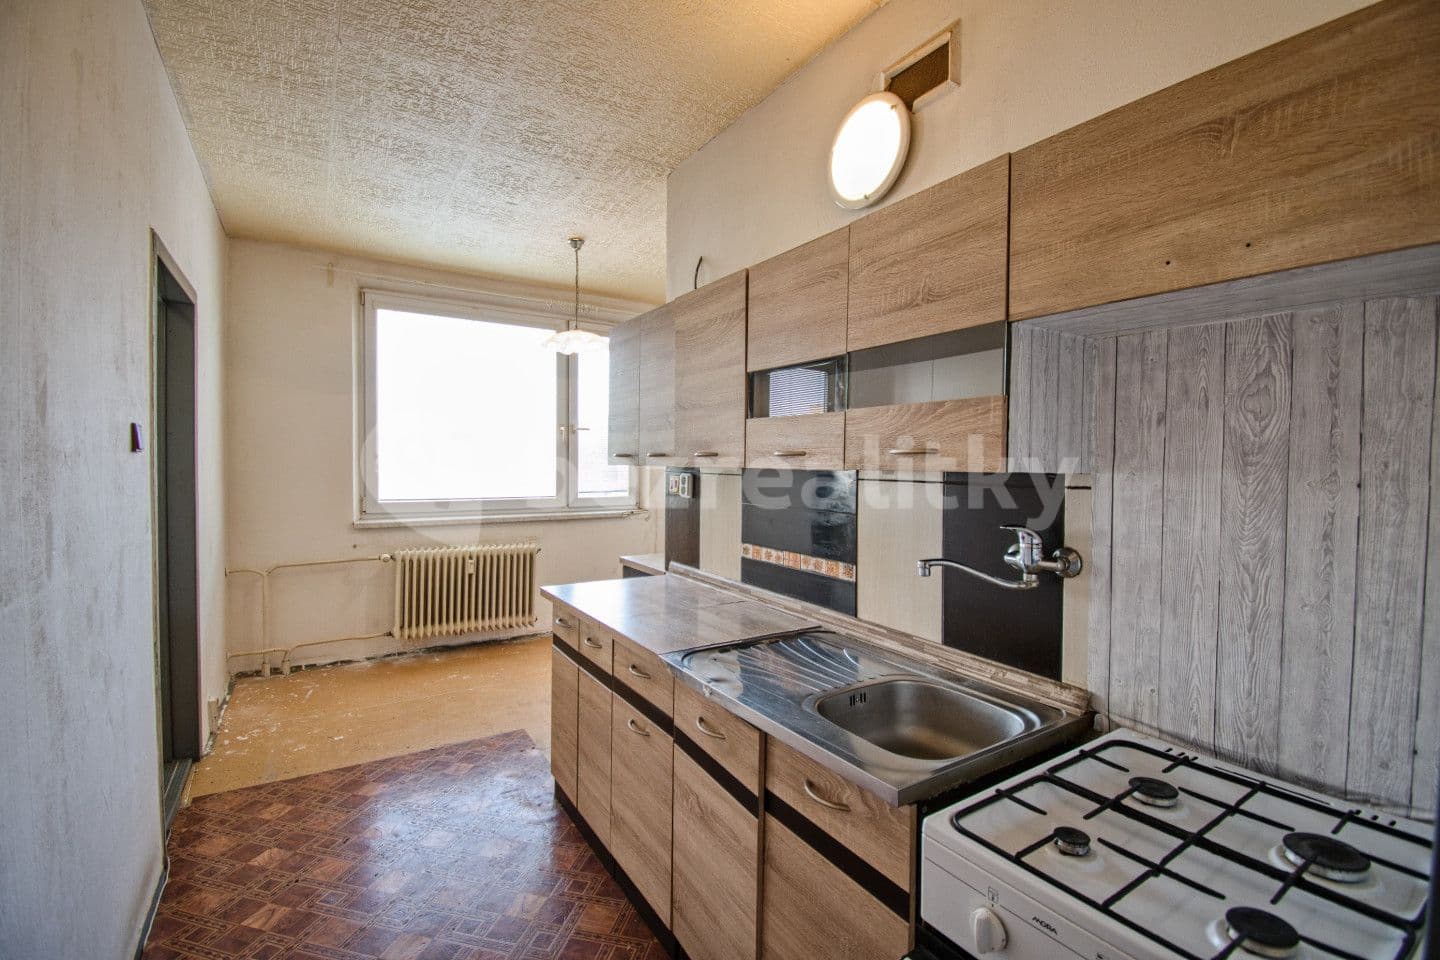 3 bedroom flat for sale, 72 m², Smetanova, Valašské Meziříčí, Zlínský Region